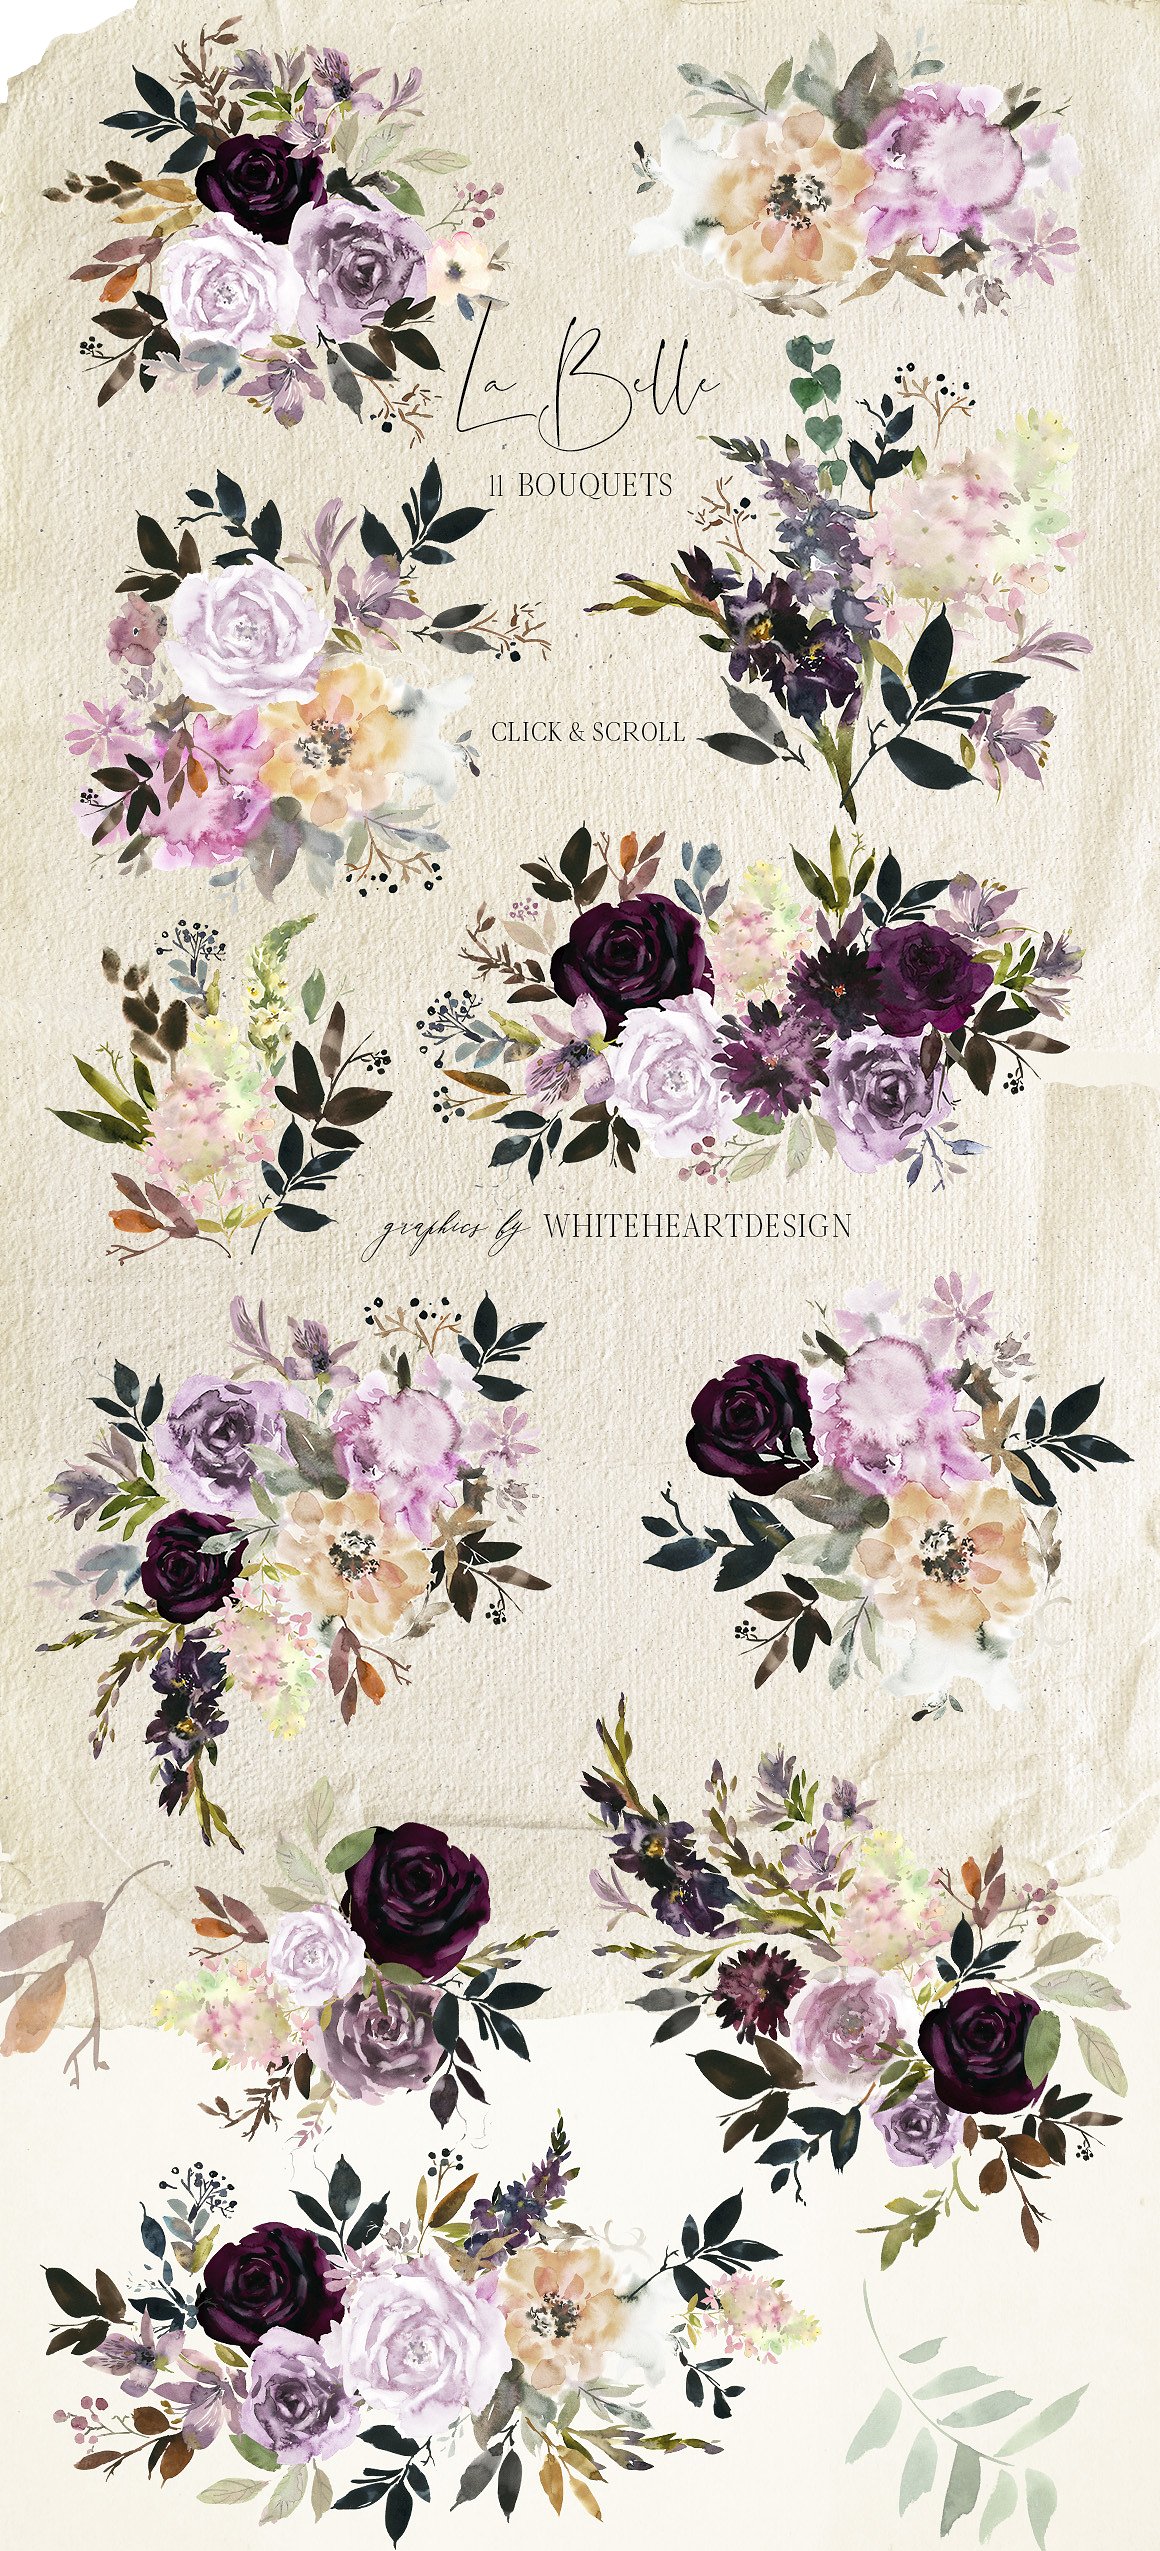 魅力水彩花卉剪贴画 La Belle Watercolor Floral Clipart插图(2)